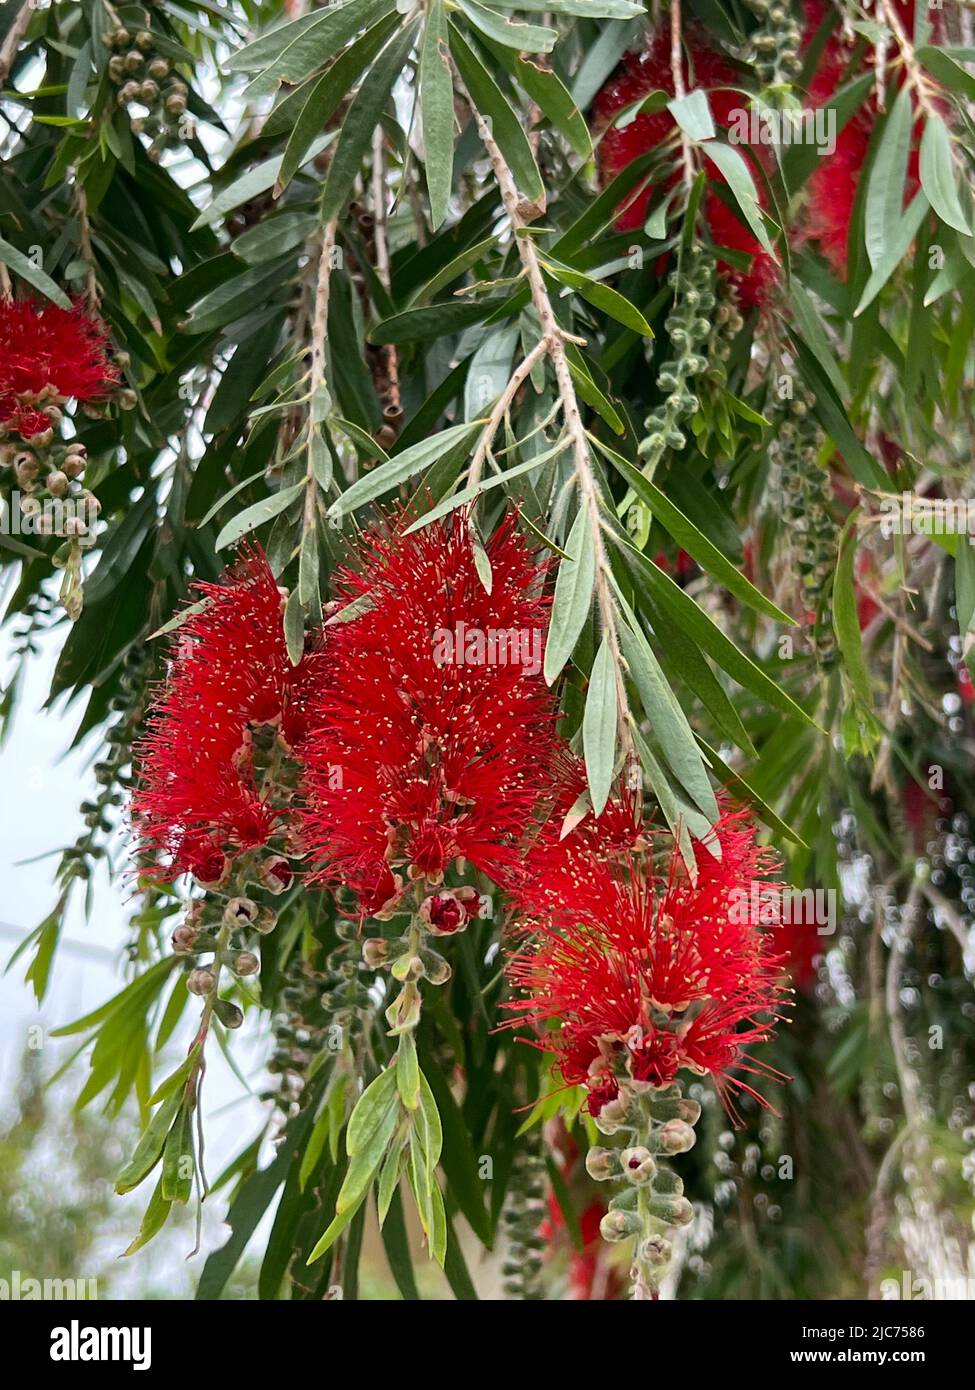 common red bottlebrush - Callistemon citrinus Syn. Melaleuca citrina - Karminroter Zylinderputzer - Fleur-goupillon Stock Photo